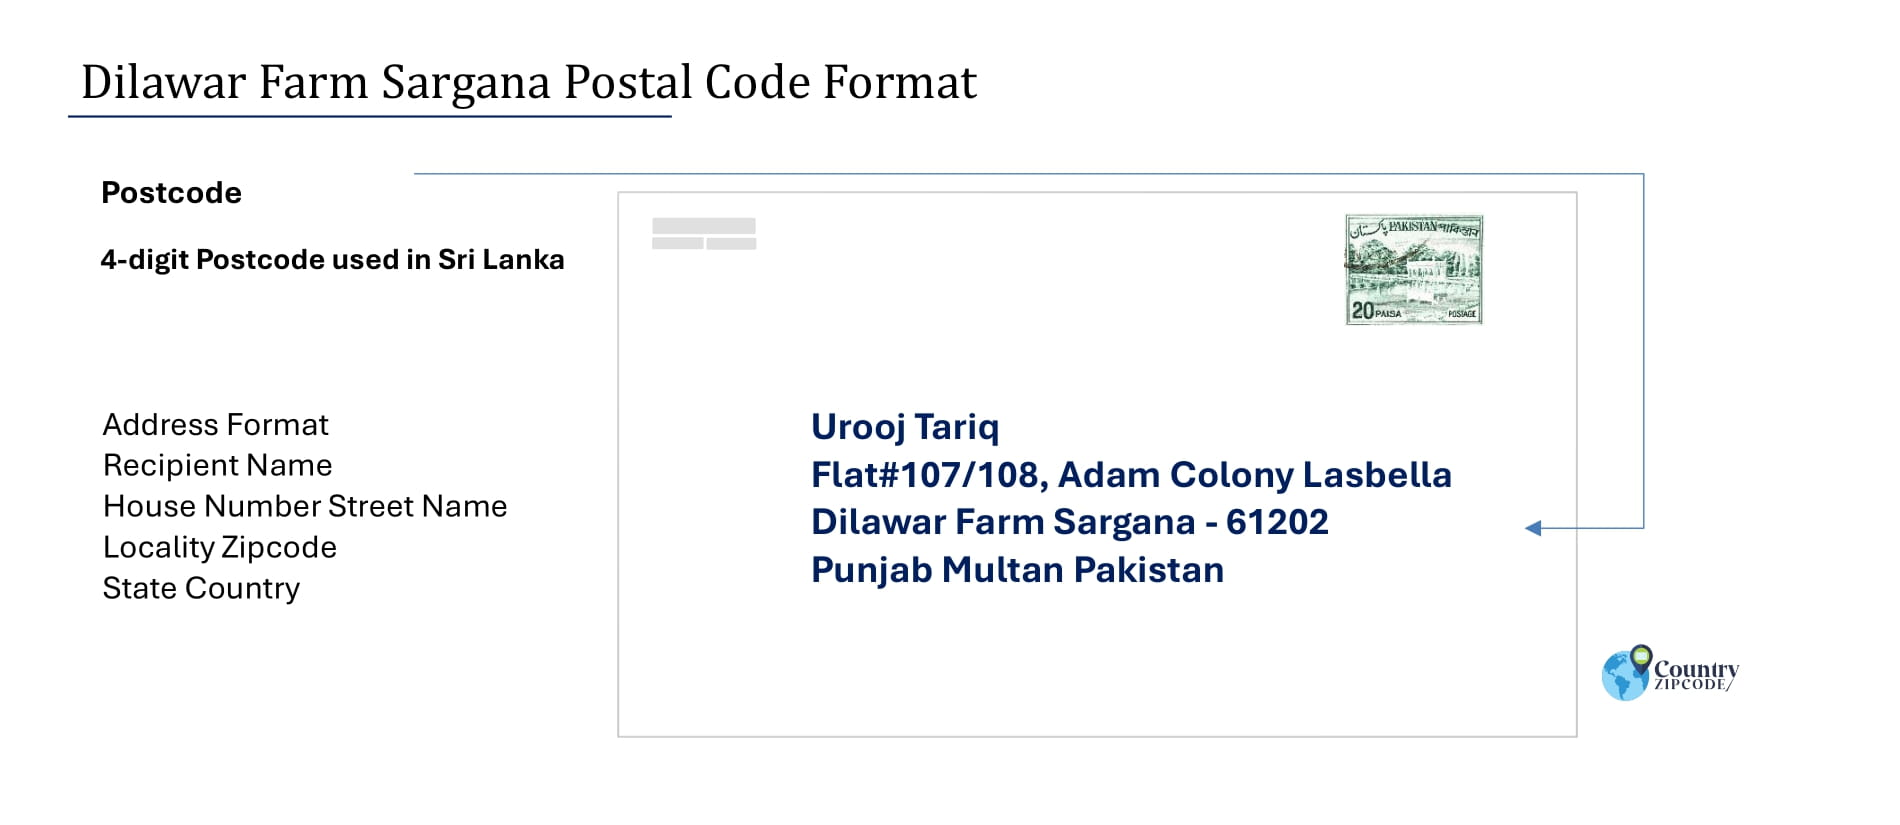 Example of Dilawar Farm Sargana Pakistan Postal code and Address format